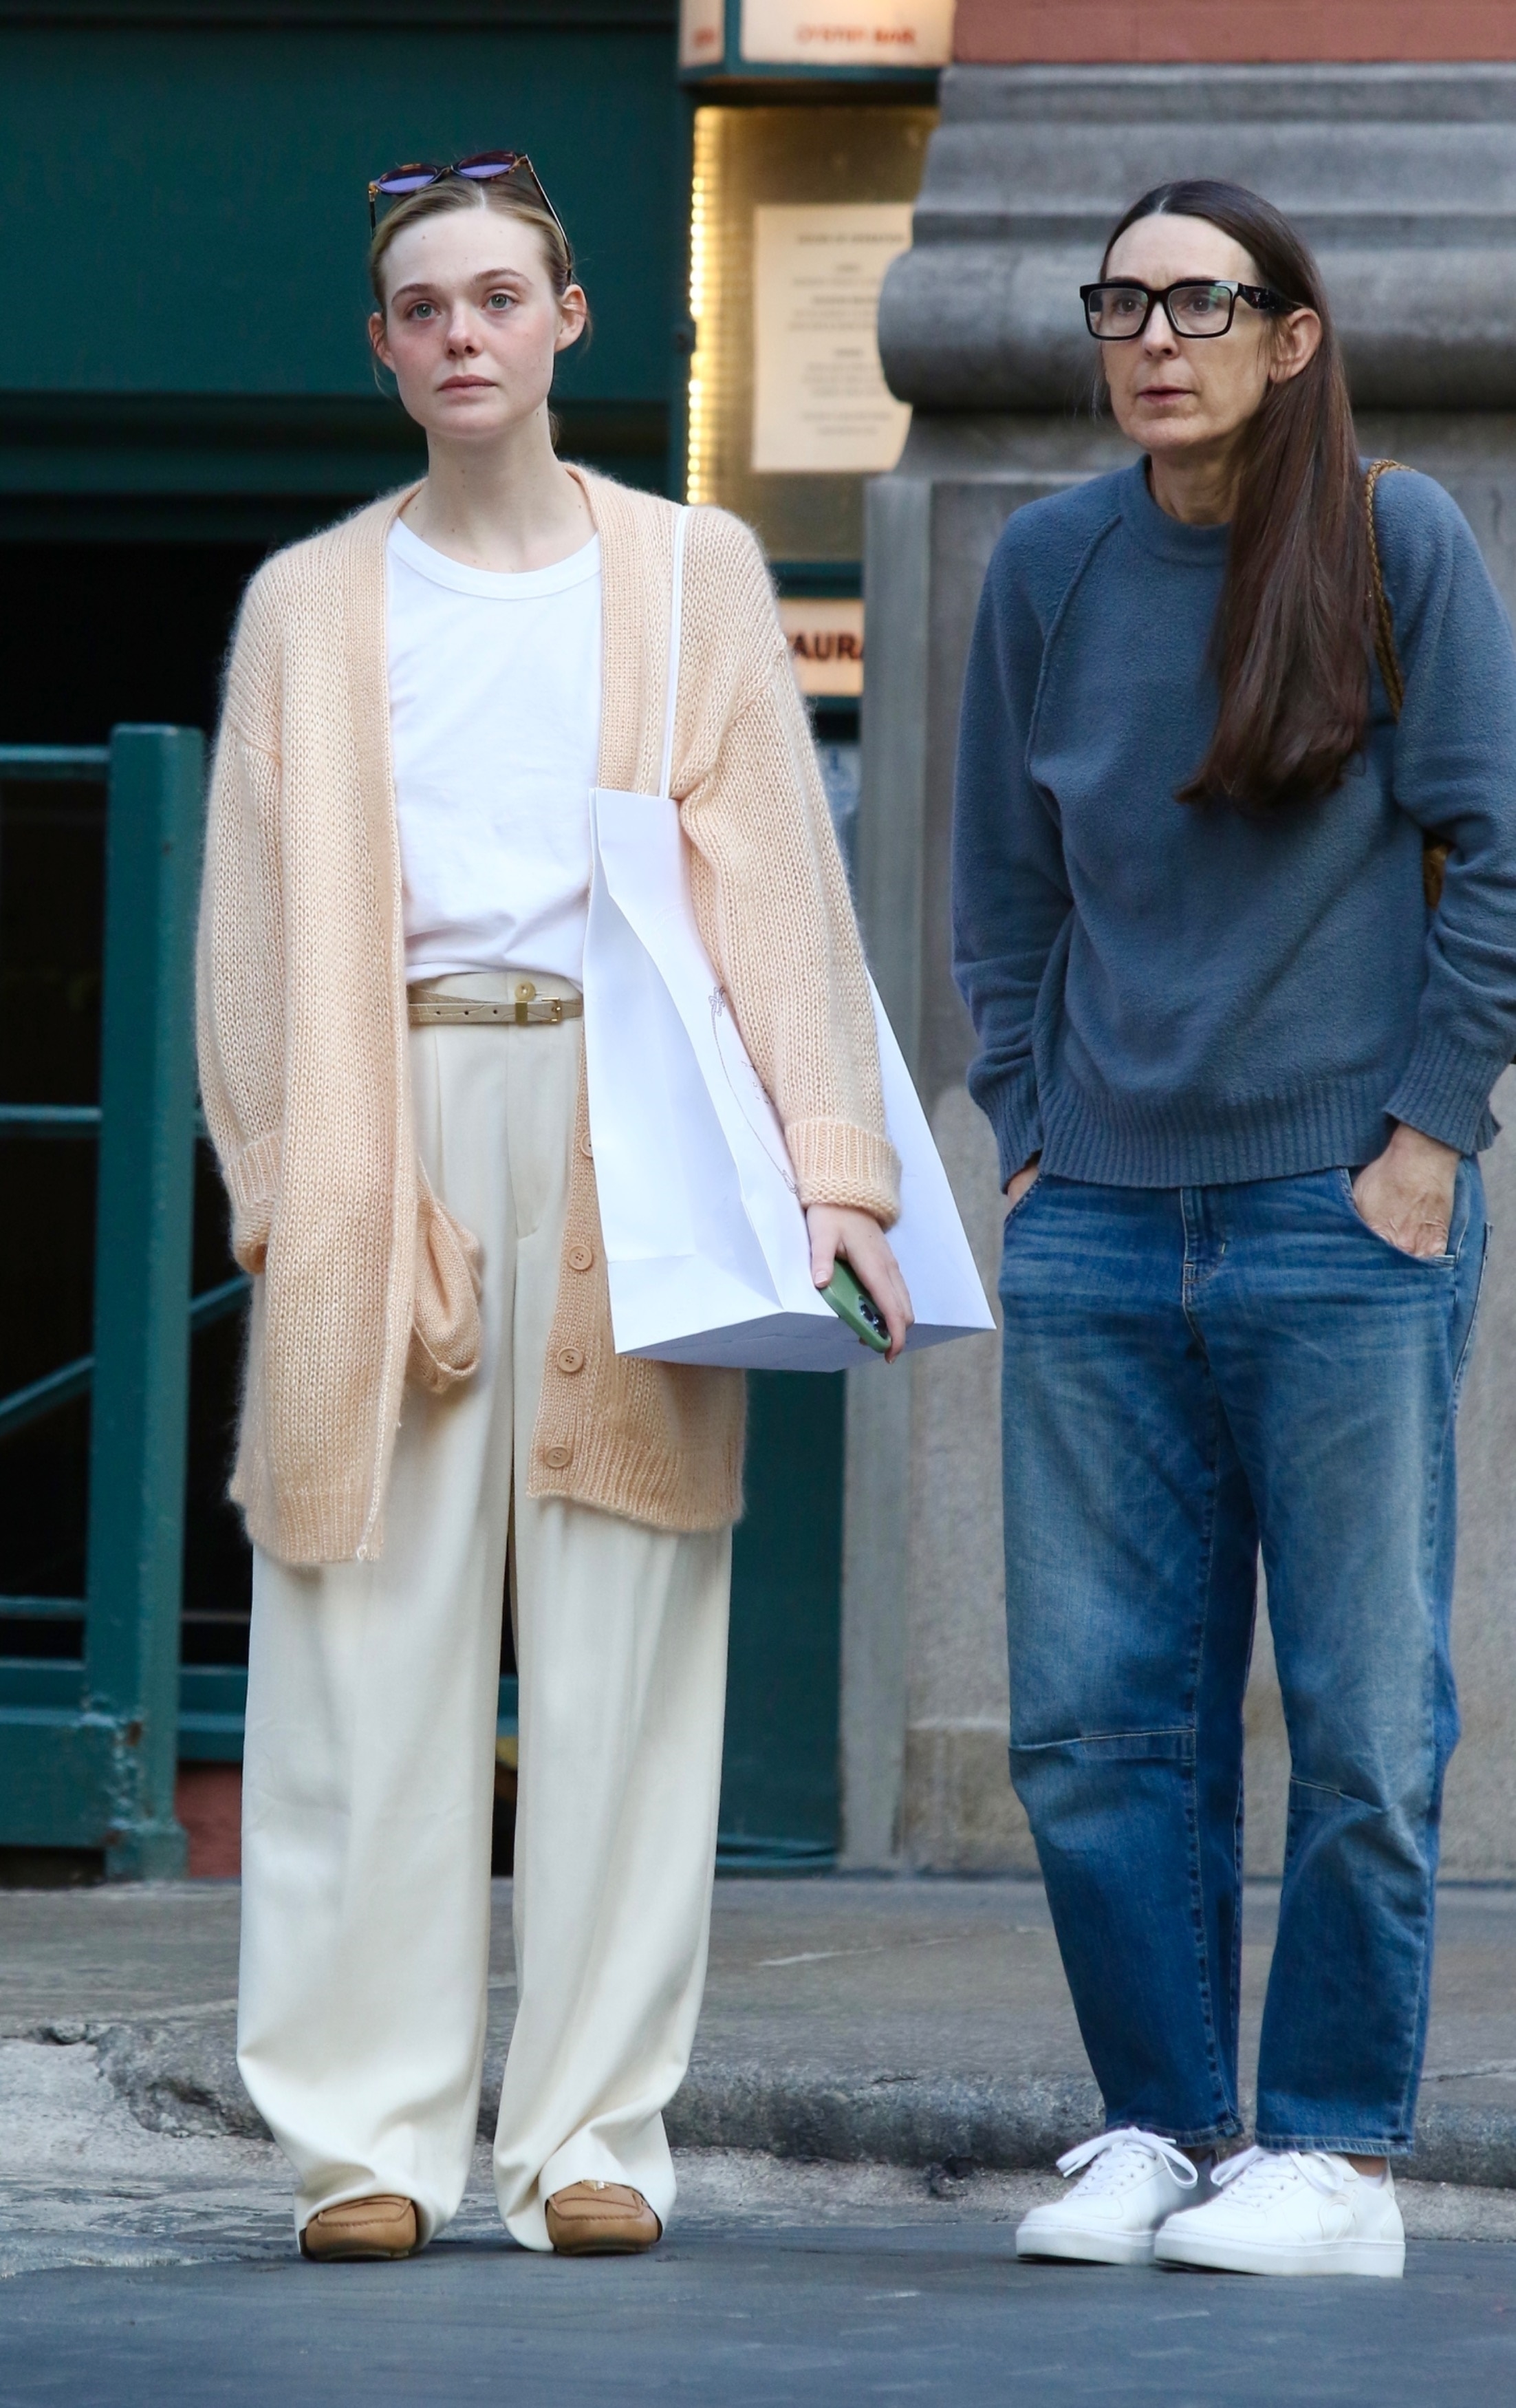 Elle Fanning wearing khaki pants in NYC